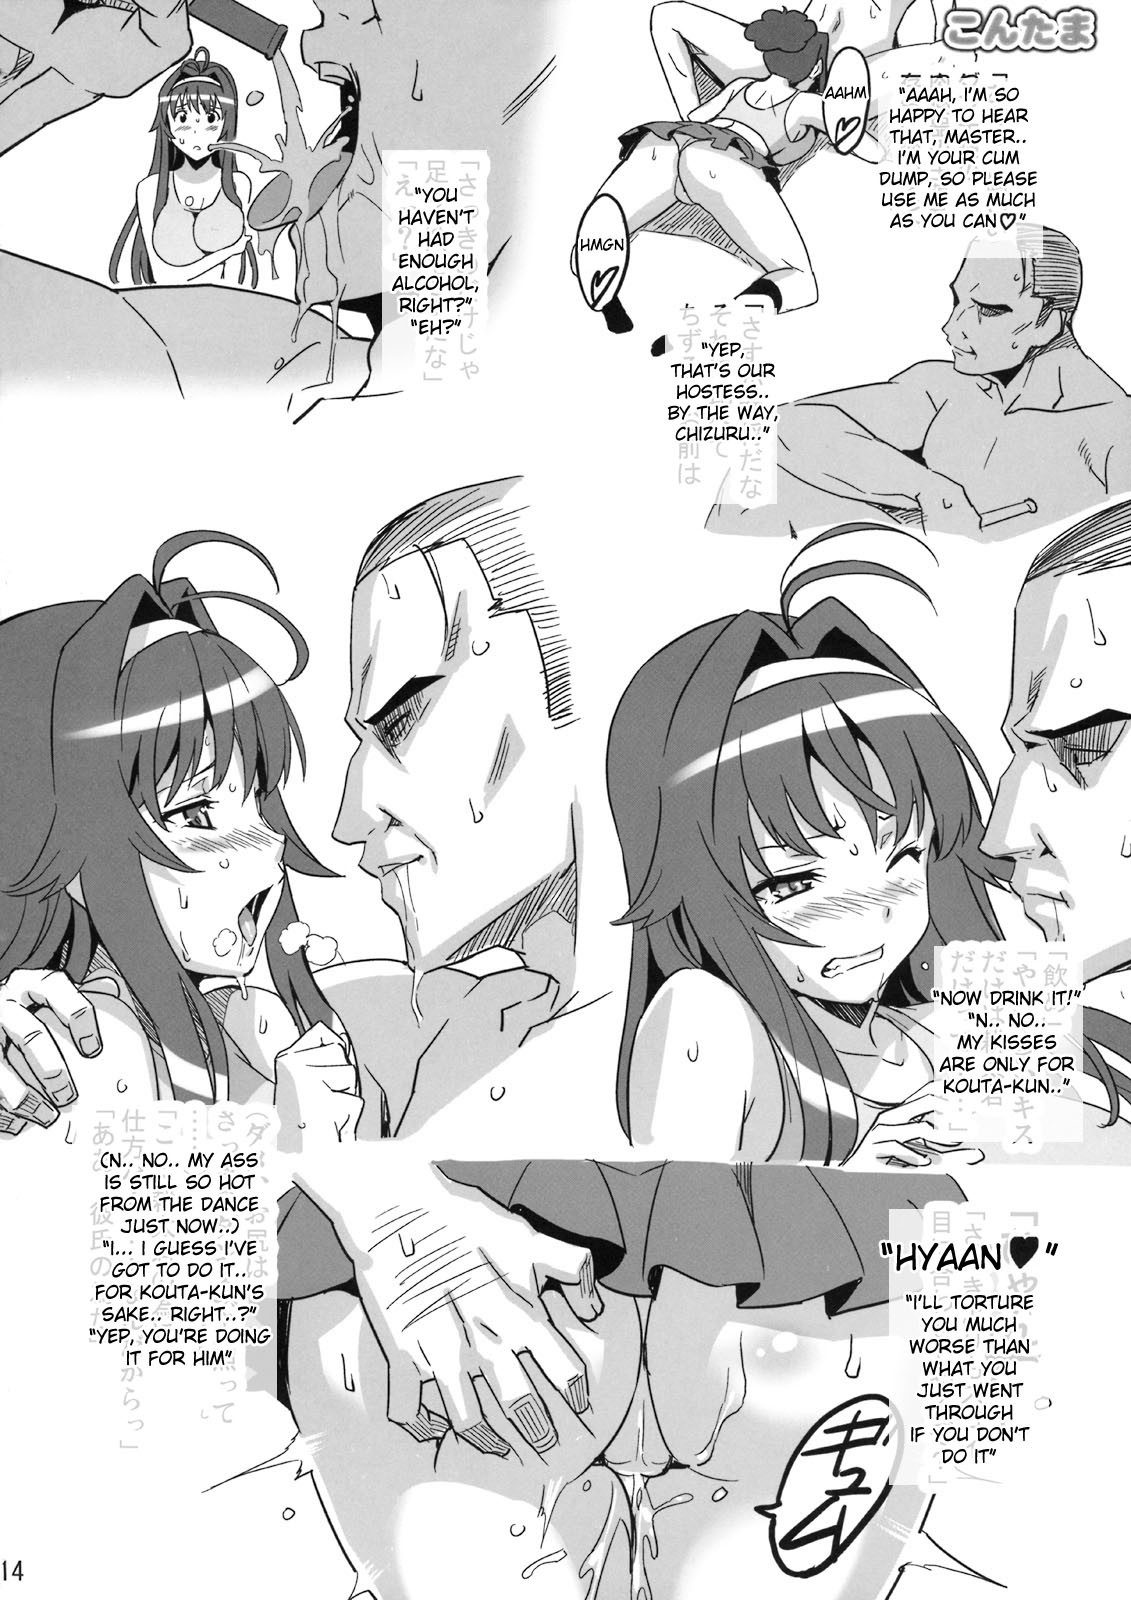 Kontama Plus arcana heart 12 hentai manga